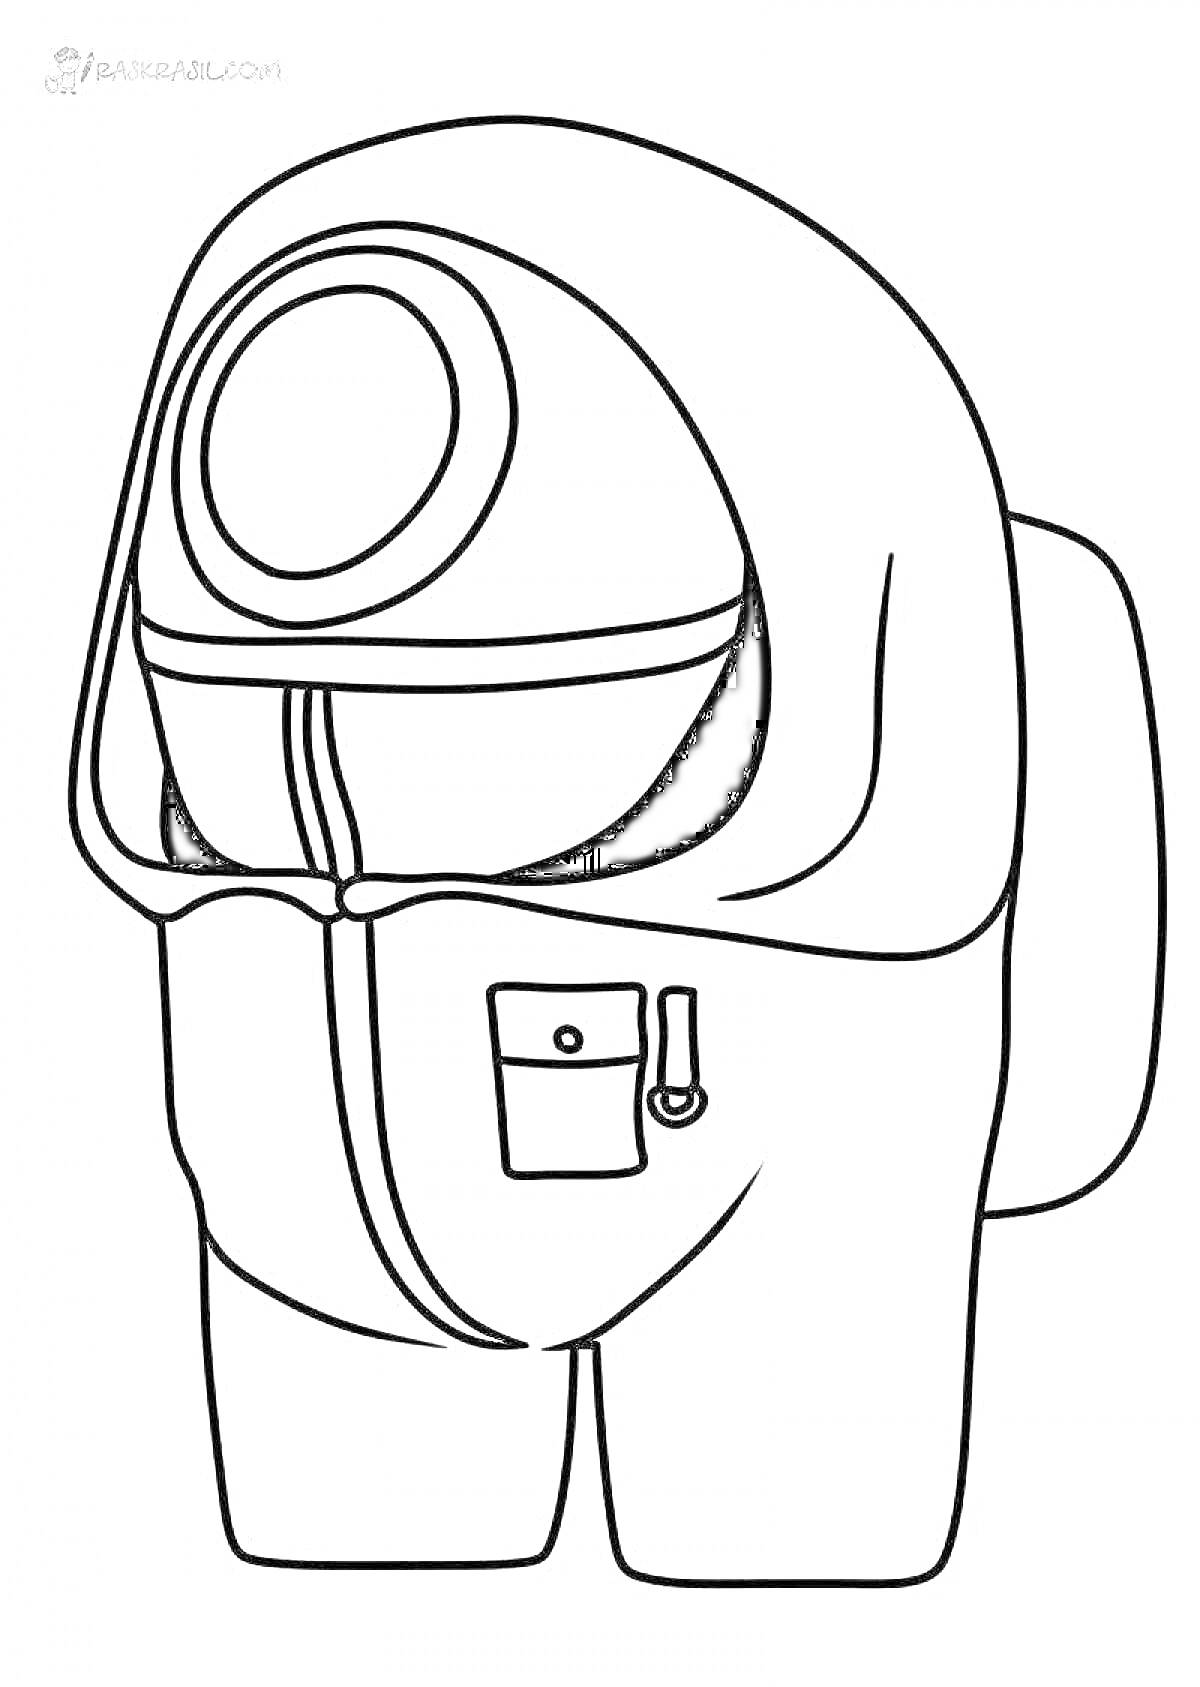 Раскраска Охранник из игры в кальмара в стиле Among Us с капюшоном, круглой маской и карманом на молнии